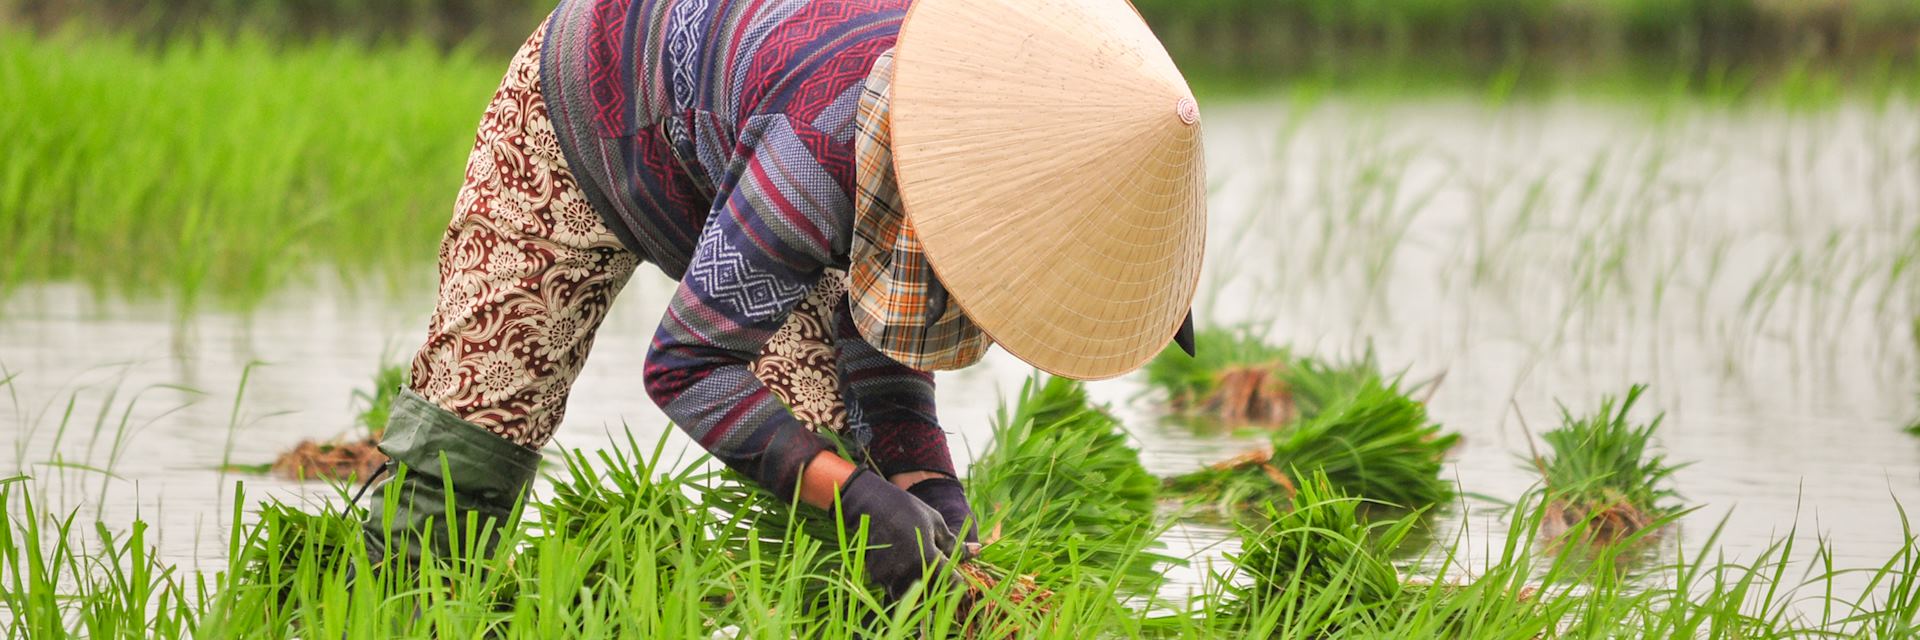 Rice farming in Hoi An